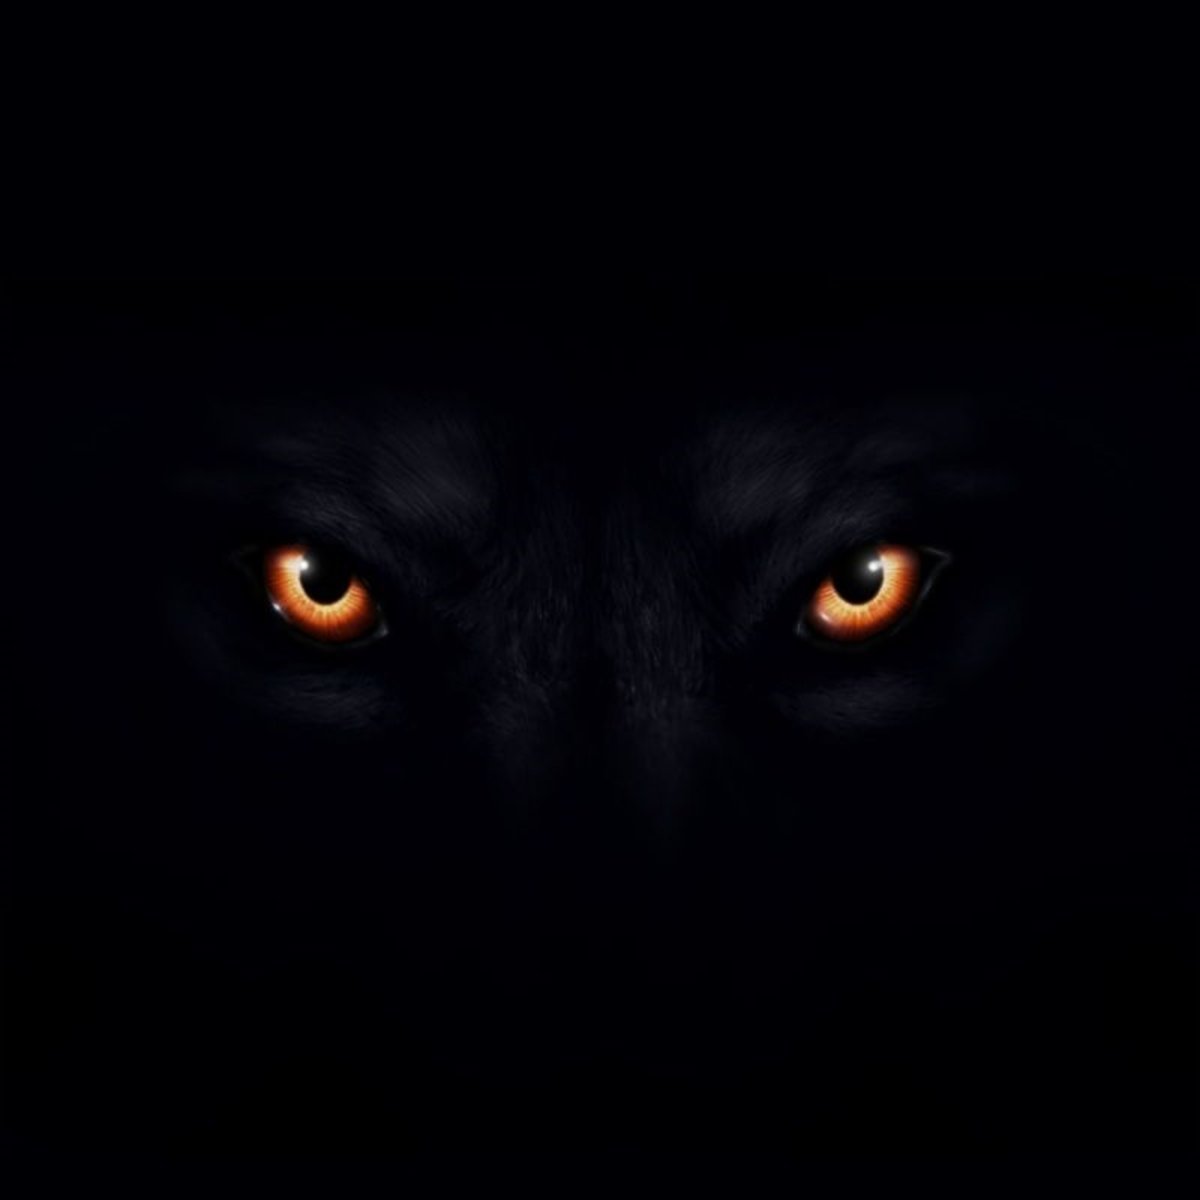 Волк светятся глаза. Глаза волка в темноте. Взгляд волка. Глаза волка на черном фоне. Волчьи глаза на черном фоне.